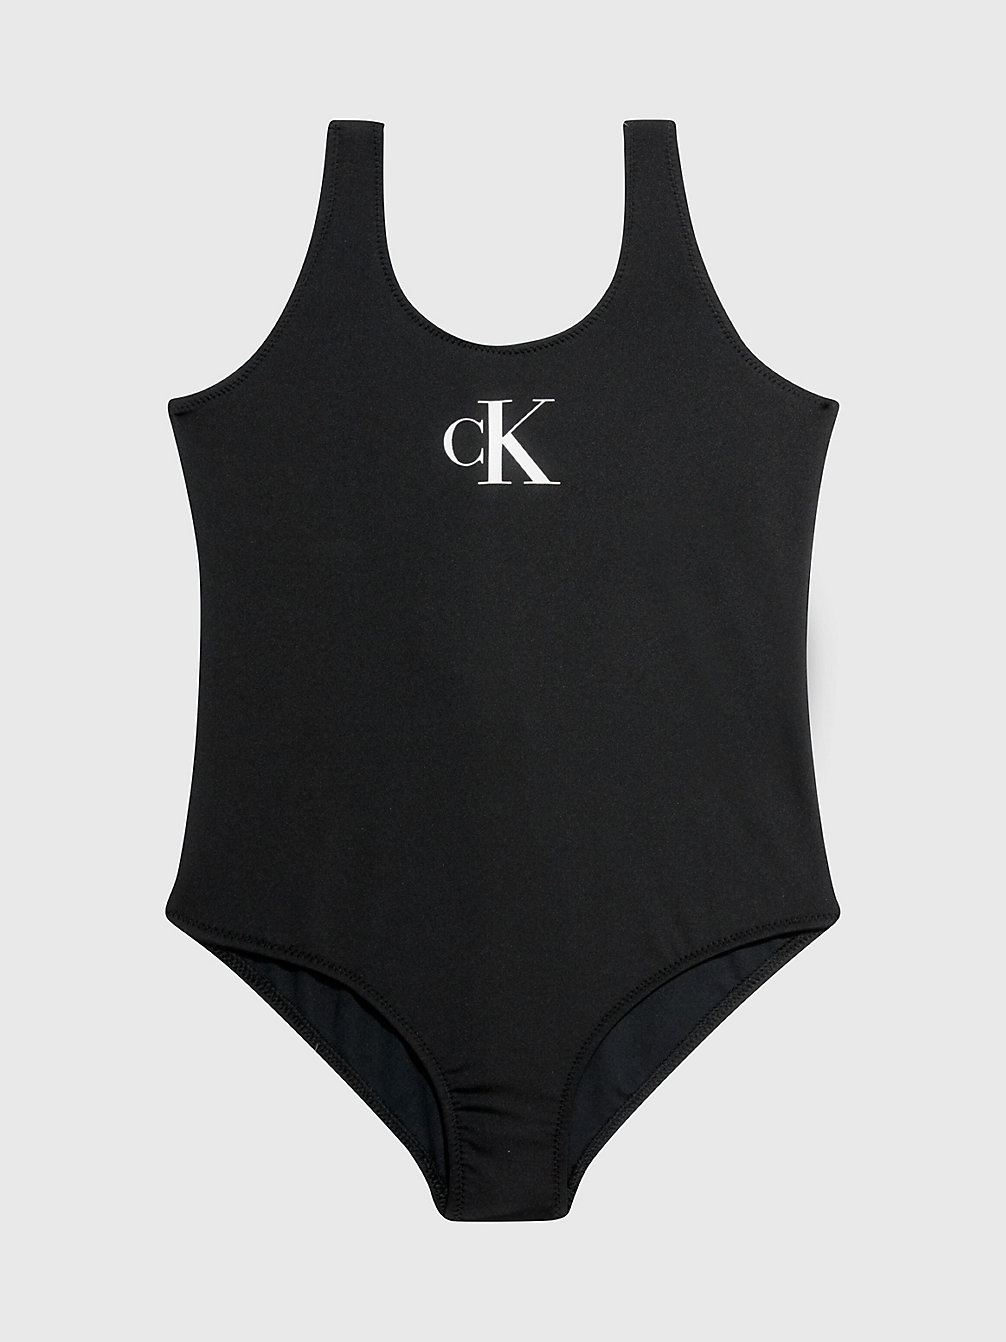 PVH BLACK Girls Swimsuit - CK Monogram undefined girls Calvin Klein